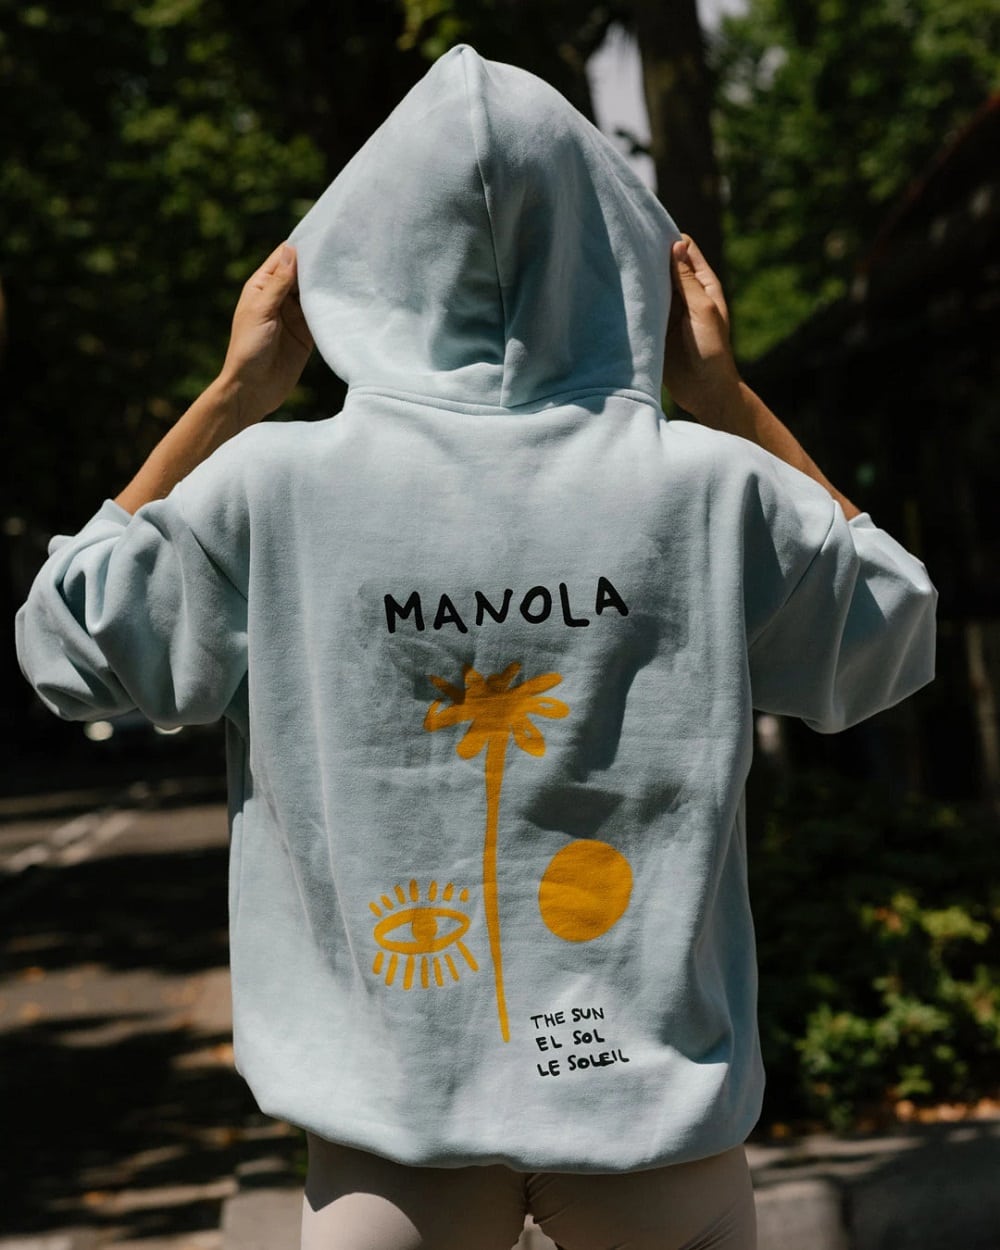 Manola activewear 2021.